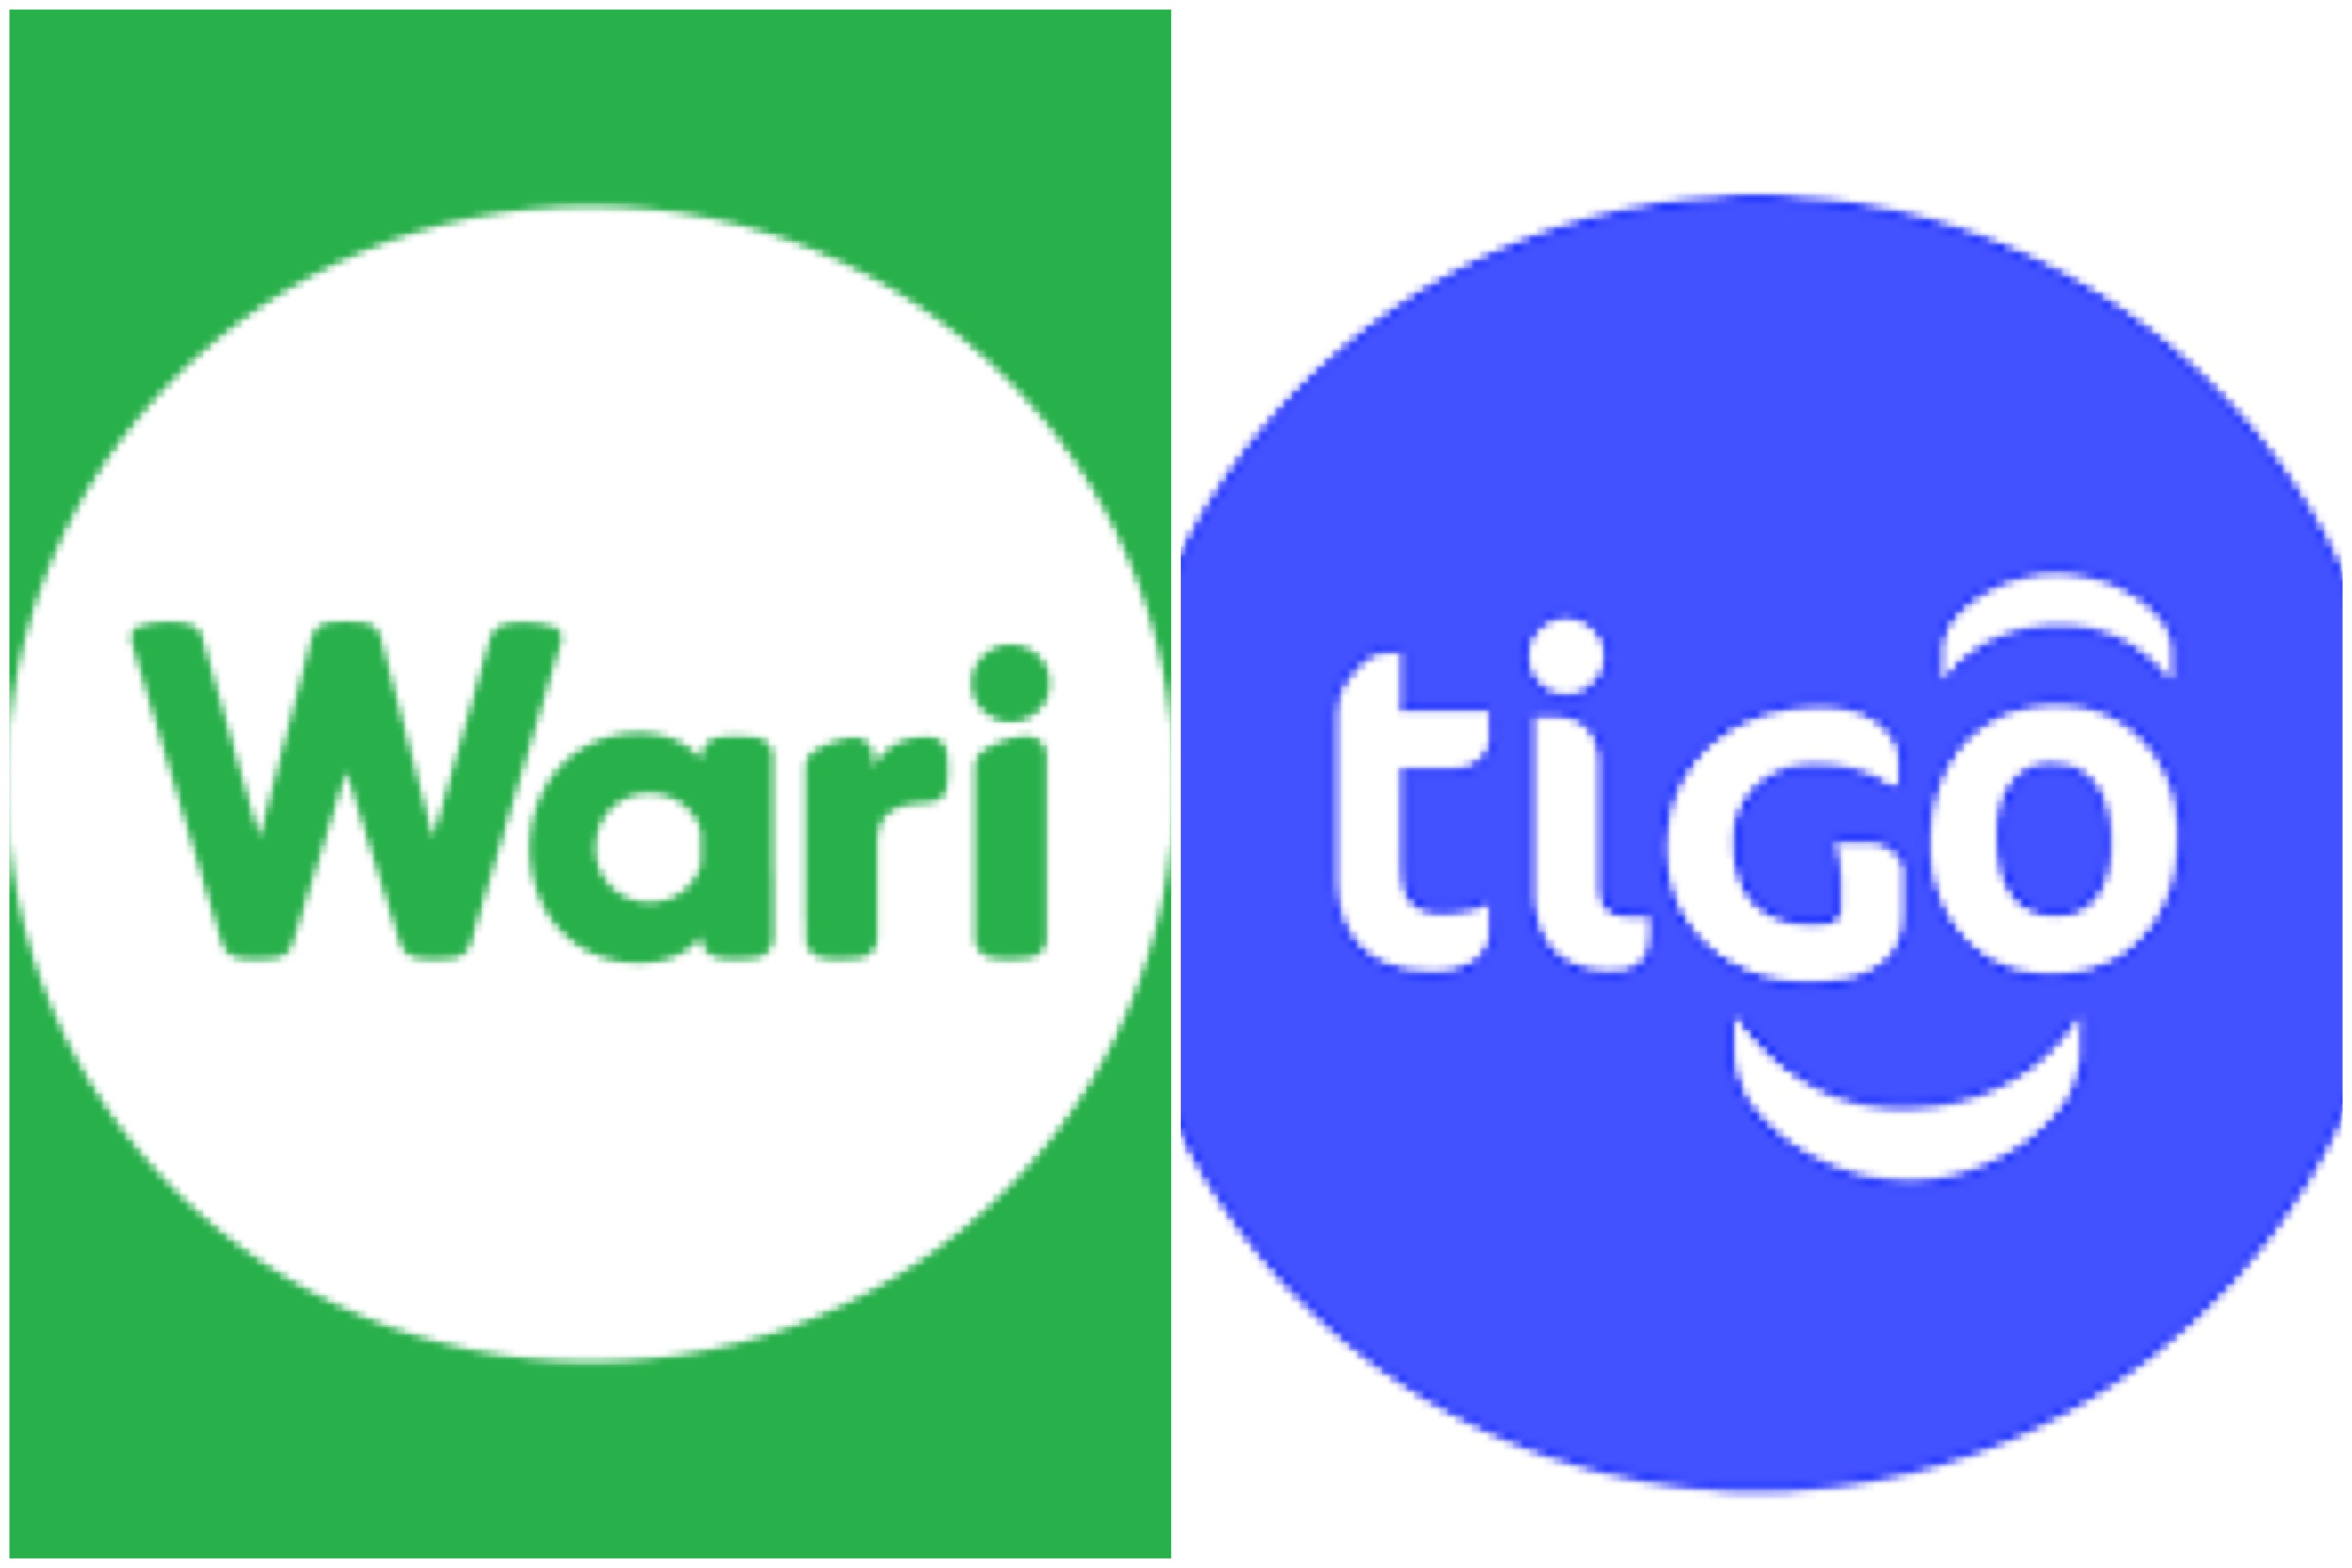 Achat de Tigo par Wari : Le communiqué officiel